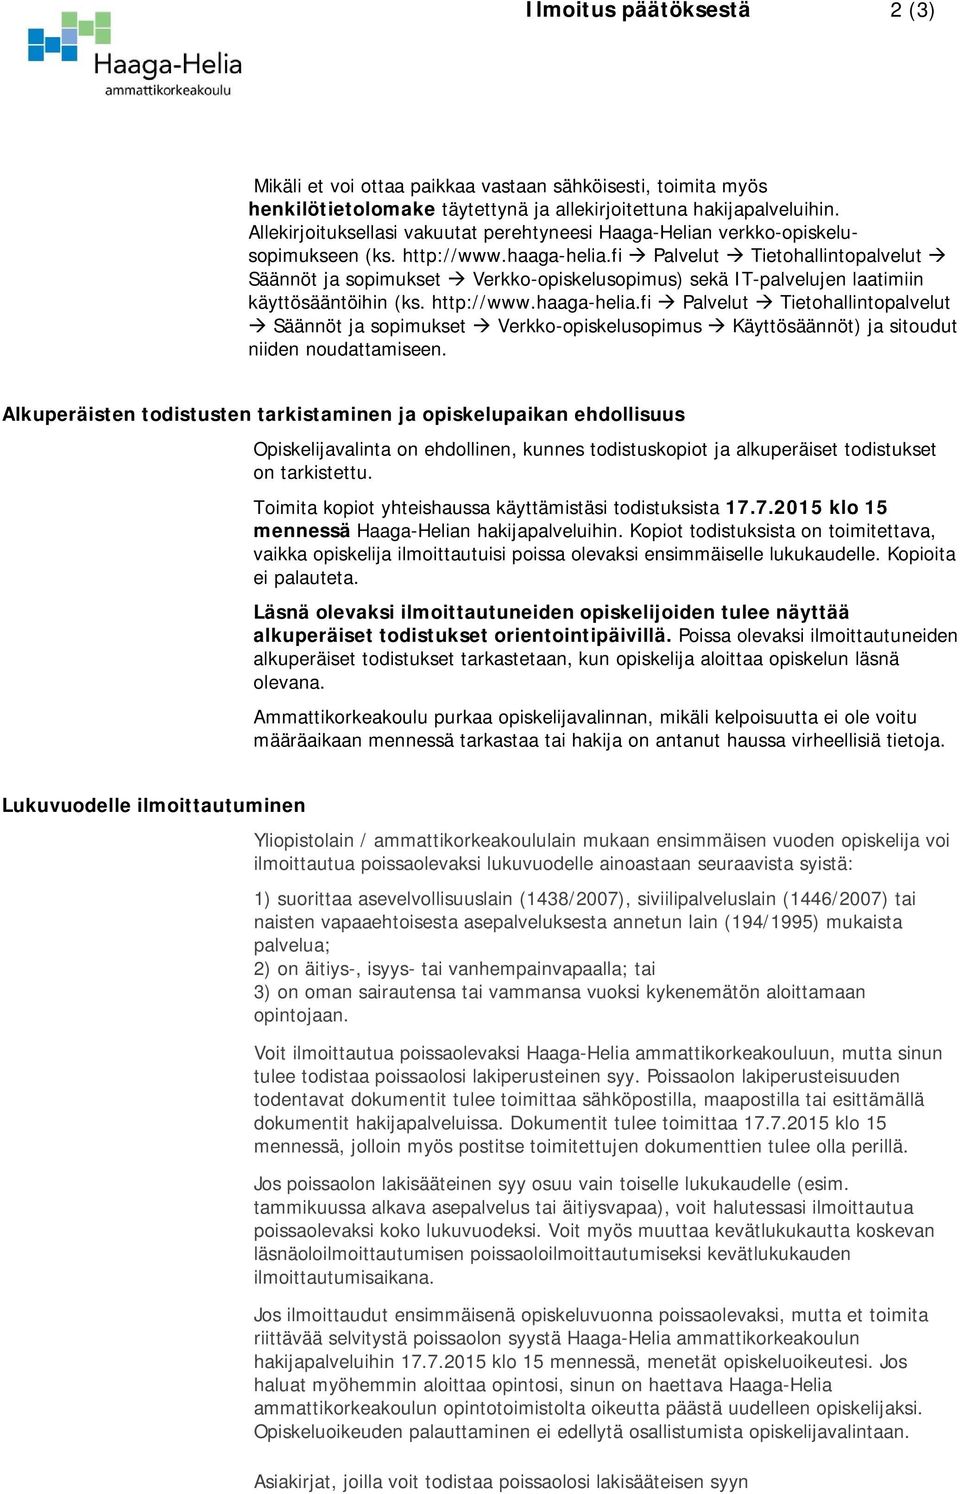 fi Palvelut Tietohallintopalvelut Säännöt ja sopimukset Verkko-opiskelusopimus) sekä IT-palvelujen laatimiin käyttösääntöihin (ks. http://www.haaga-helia.